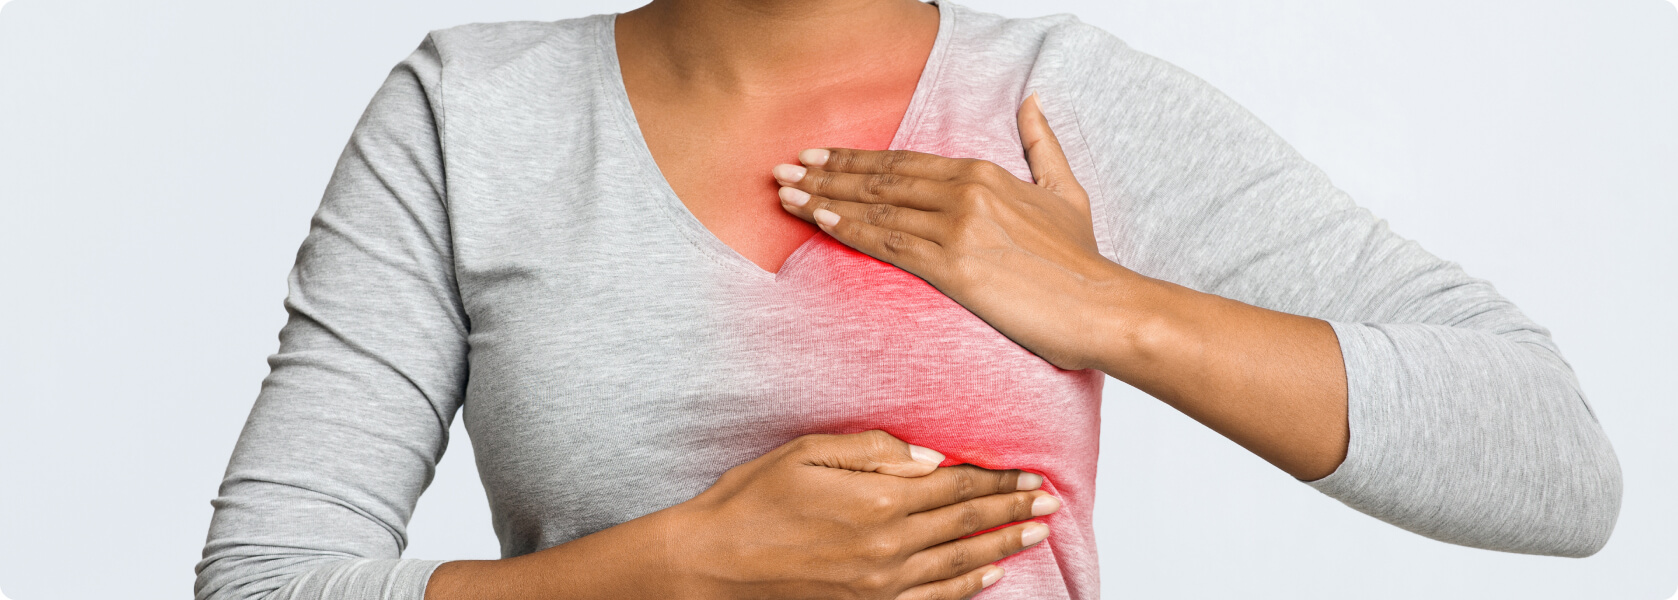 Brustschmerzen - Was ist unter Brustschmerzen zu verstehen?